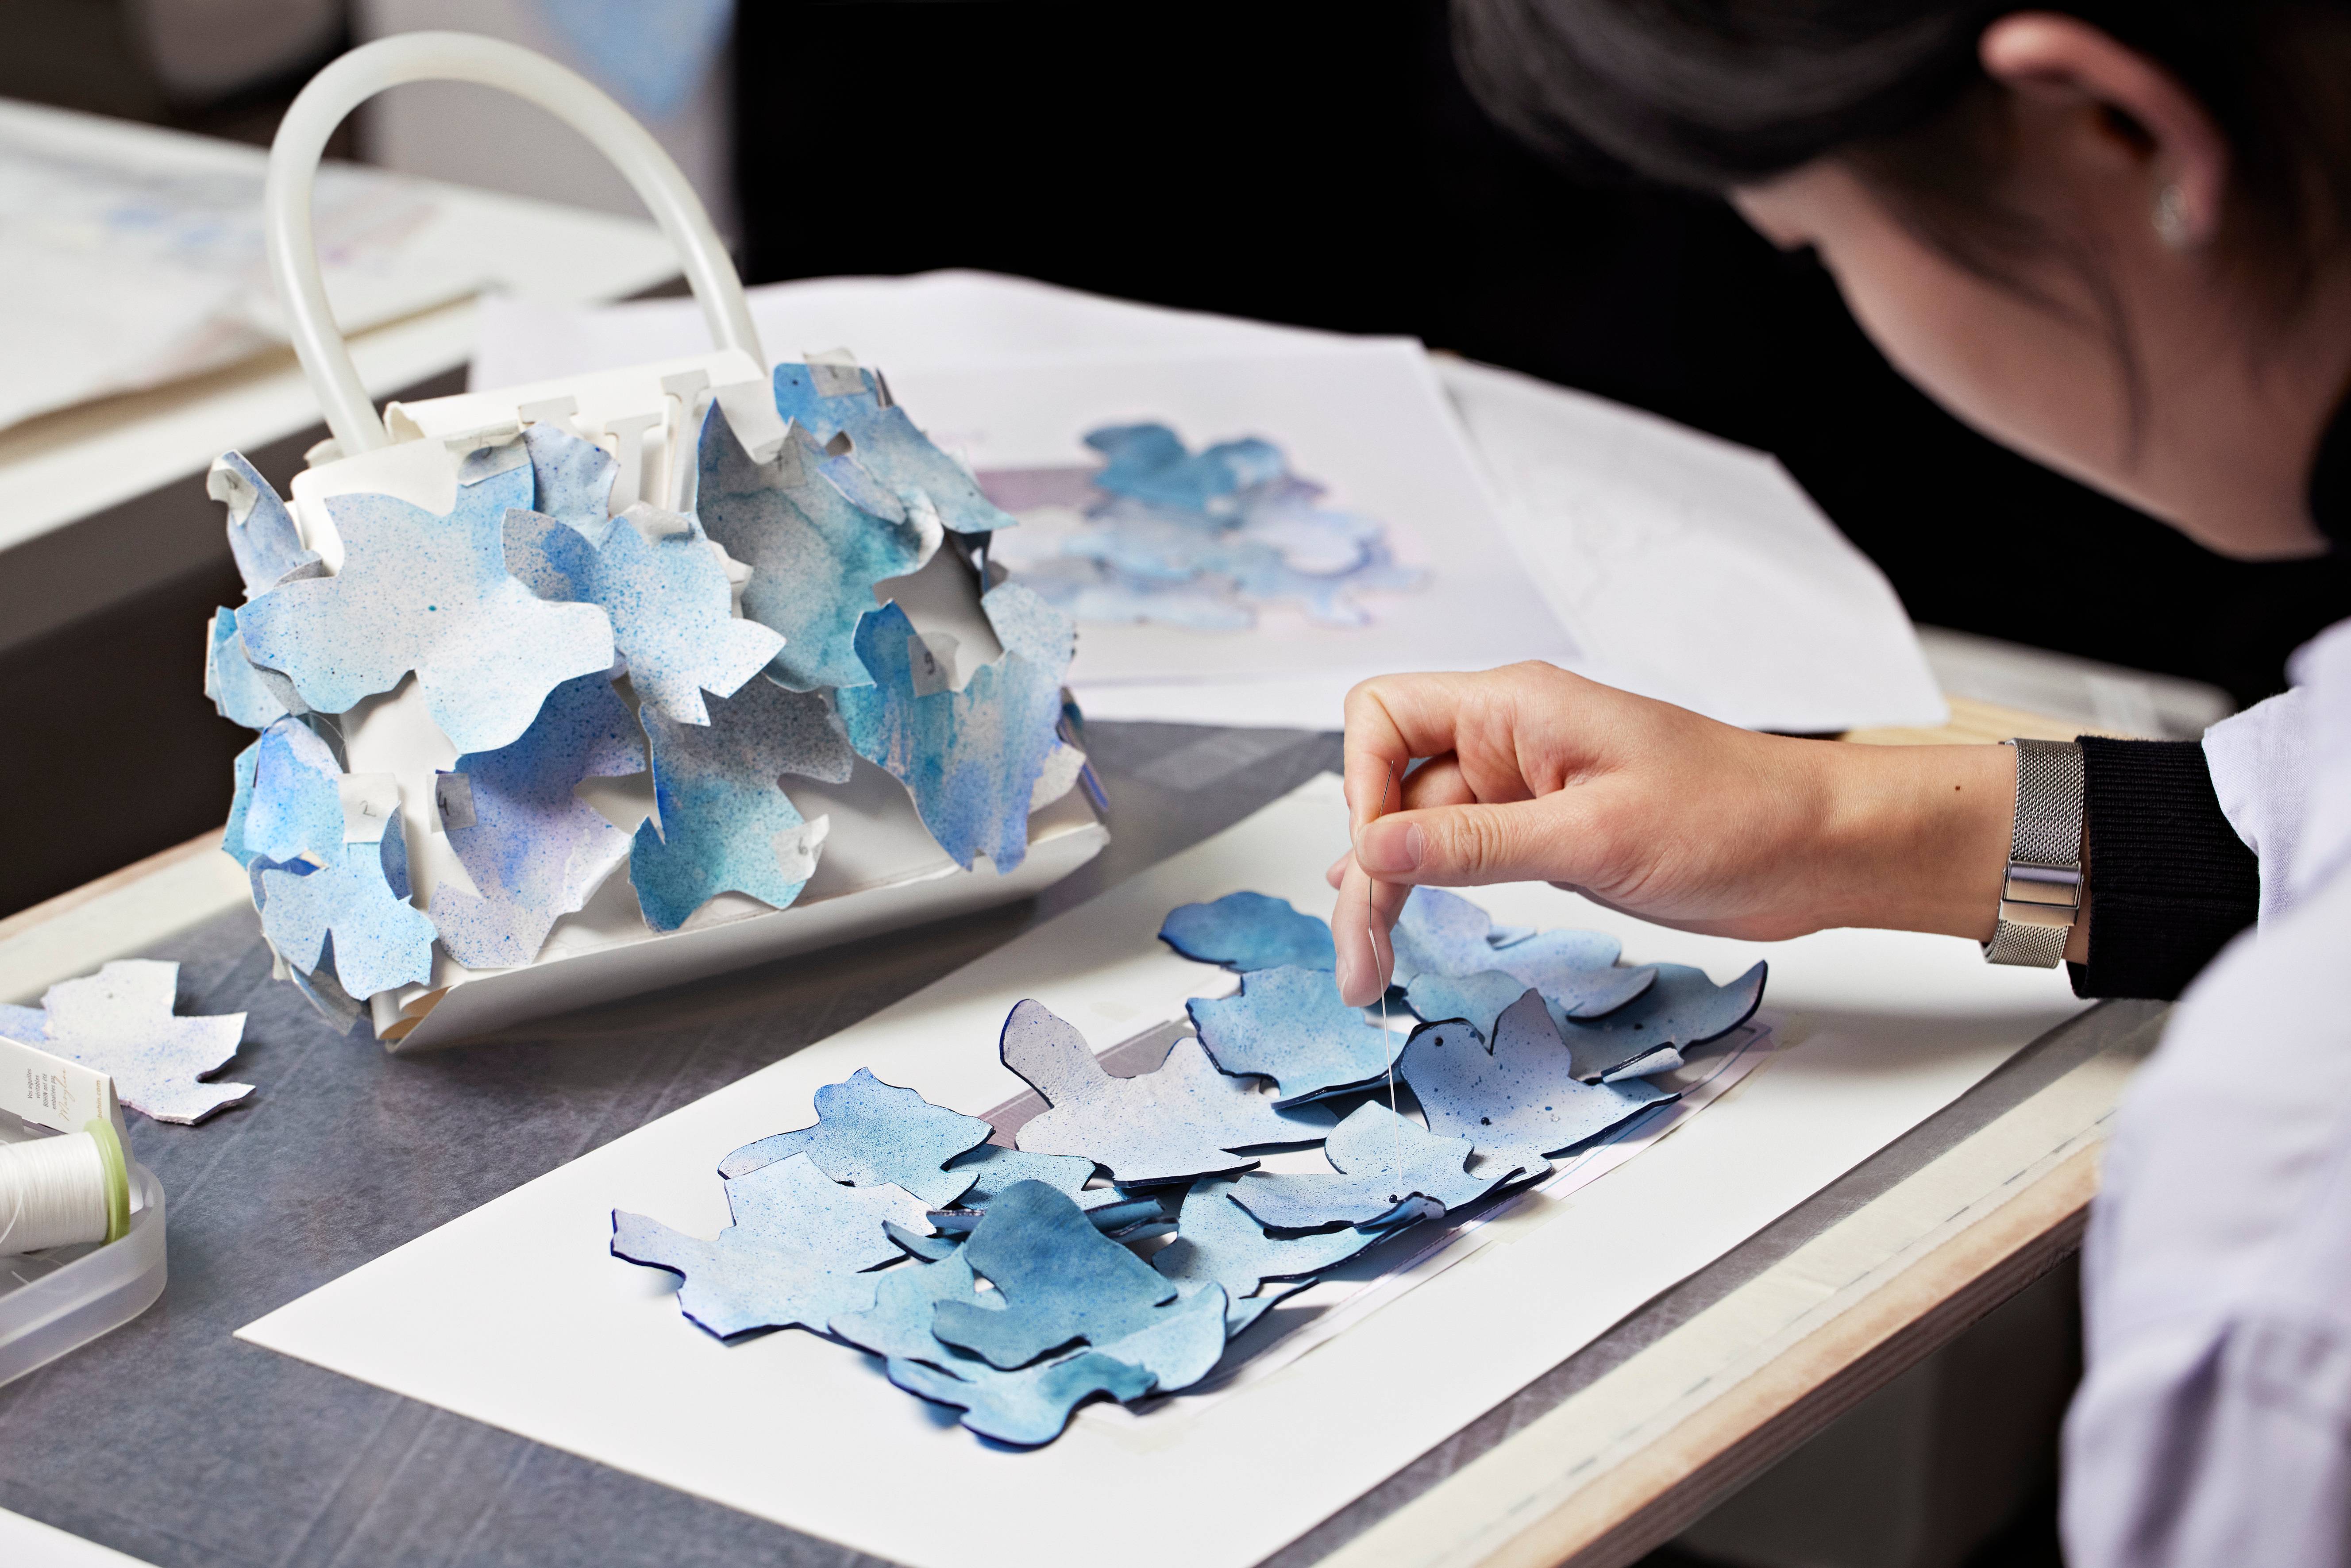 Les ateliers Louis Vuitton travaillant à la création du Capucines Mini Blossom. Photo : Piotr Stoklosa.